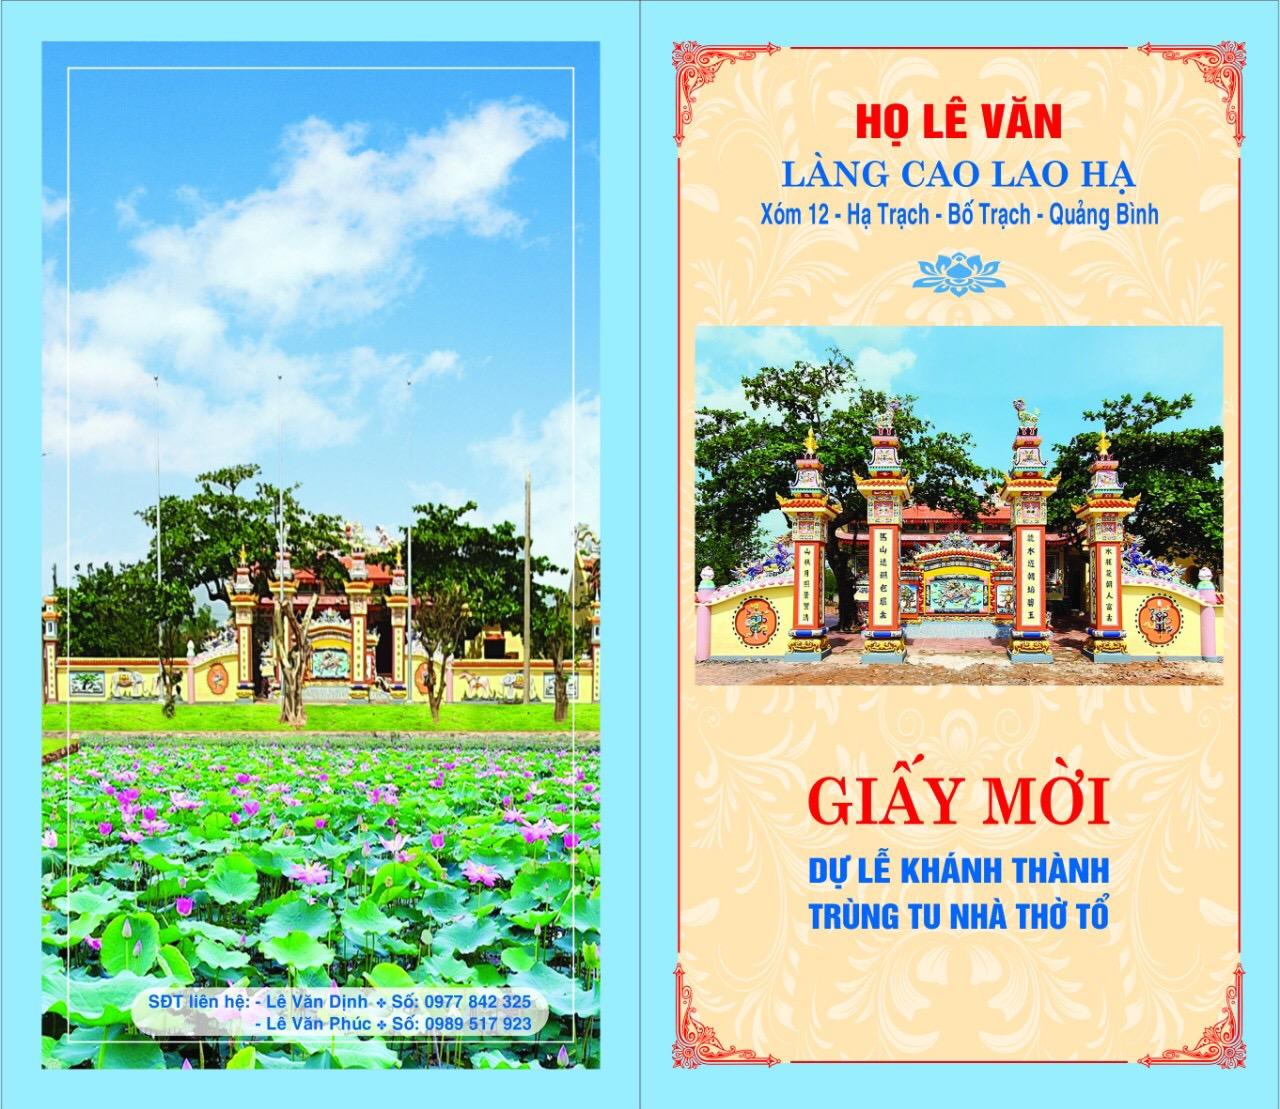 Giấy mời dự lễ khánh thành nhà thờ họ Lê Văn làng Cao Lao Hạ